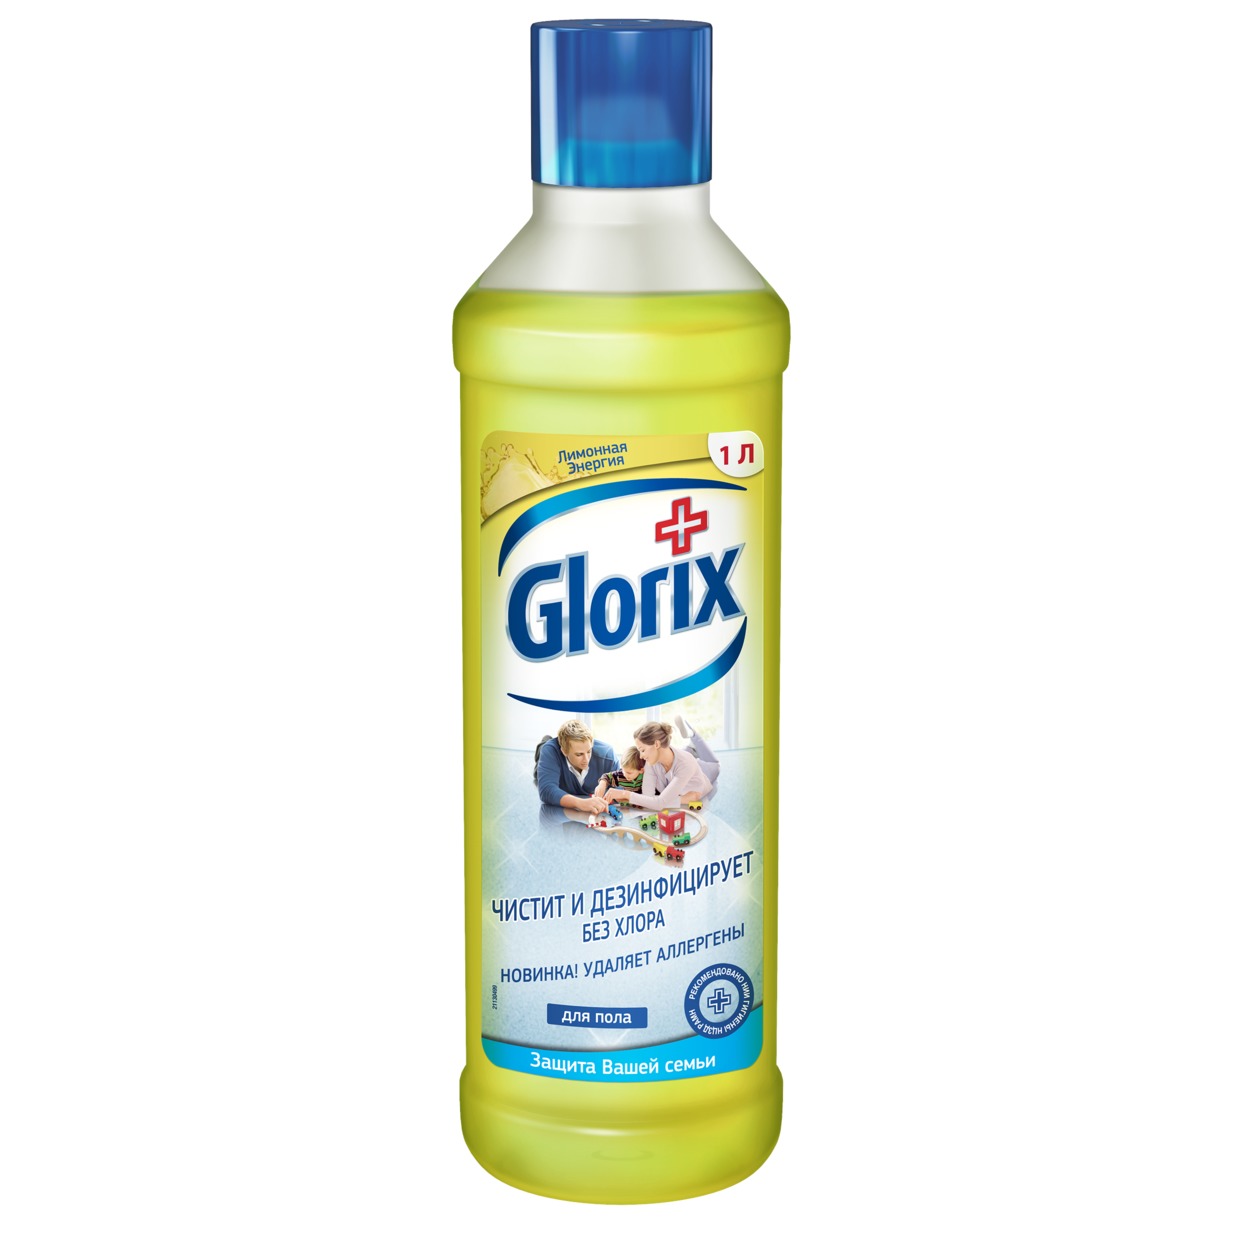 Средство Чистящее Для Пола Glorix, лимонная энергия, 1 л